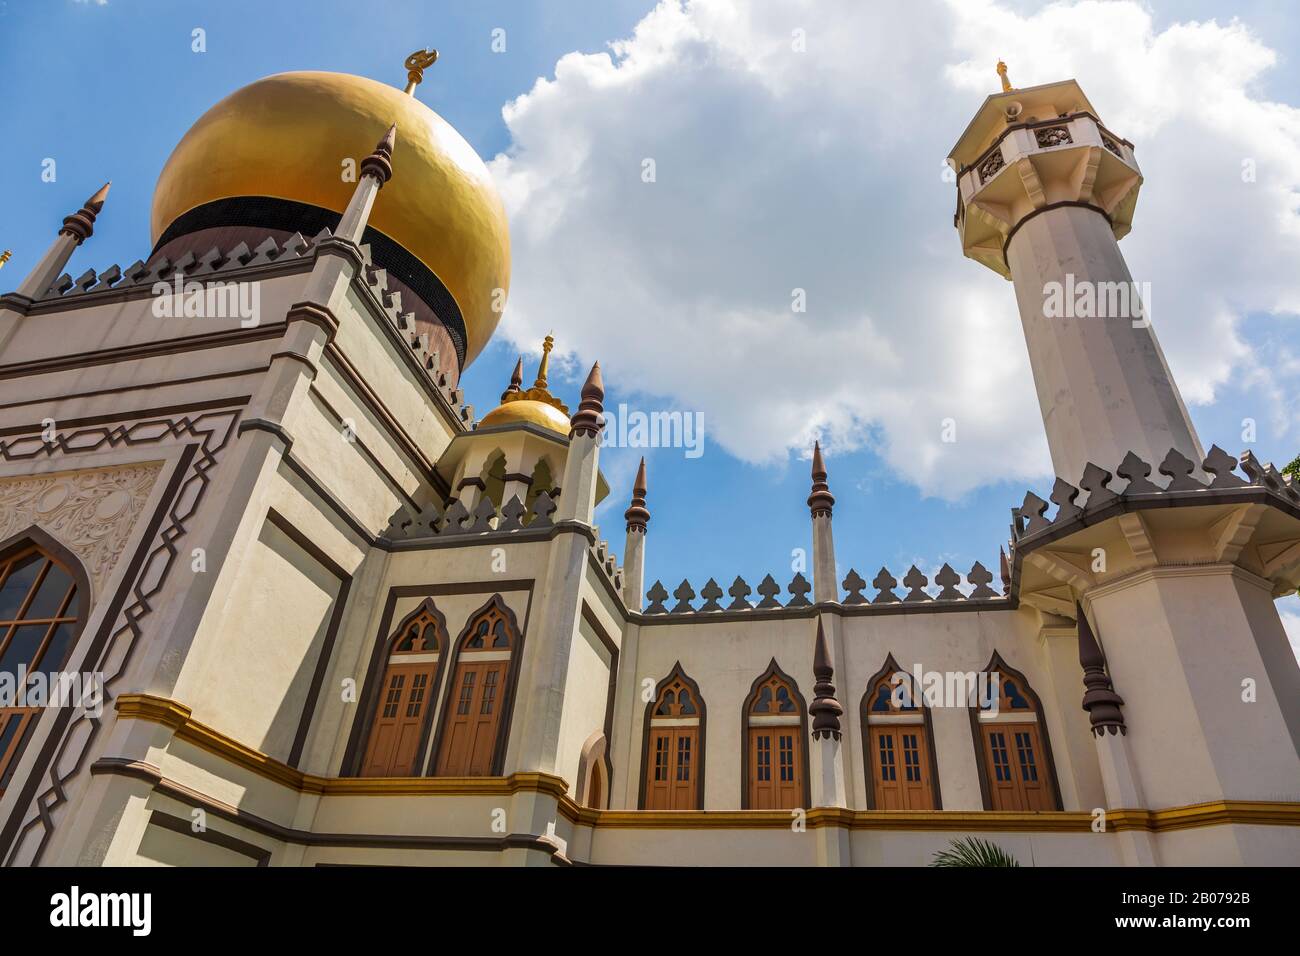 La Mezquita del Sultán, la mezquita más importante de Singapur, comenzó en 1824 y se construyó en el distrito de patrimonio malayo de Kpong Glam de Singapur y puede mantenerse Foto de stock